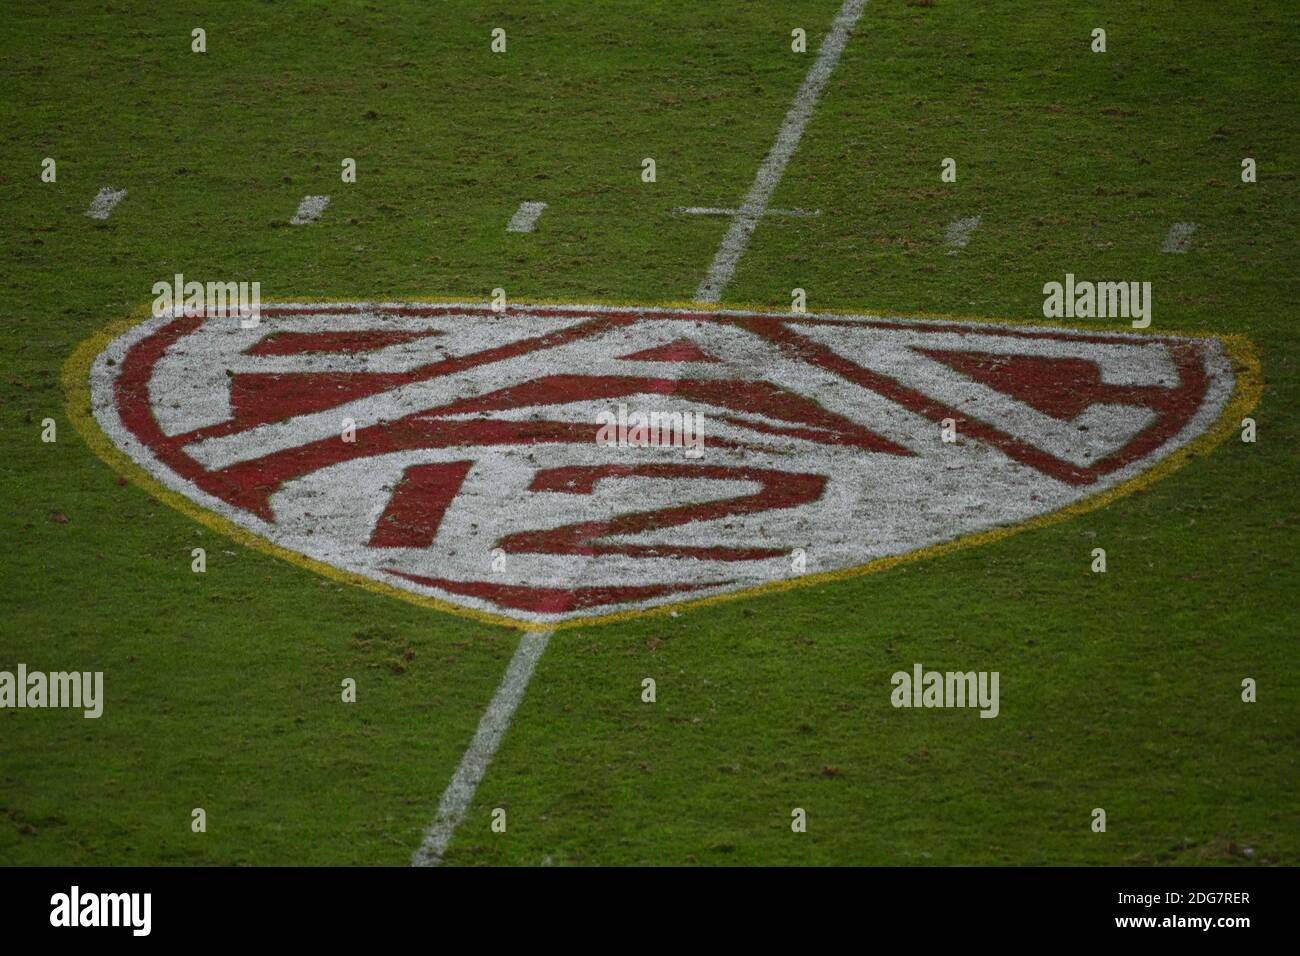 Detailansicht des „PAC-12“-Logos auf dem Spielfeld während eines NCAA-Fußballspiels zwischen den Südkalifornischen Trojanern und den Washington State Cougars, Stockfoto